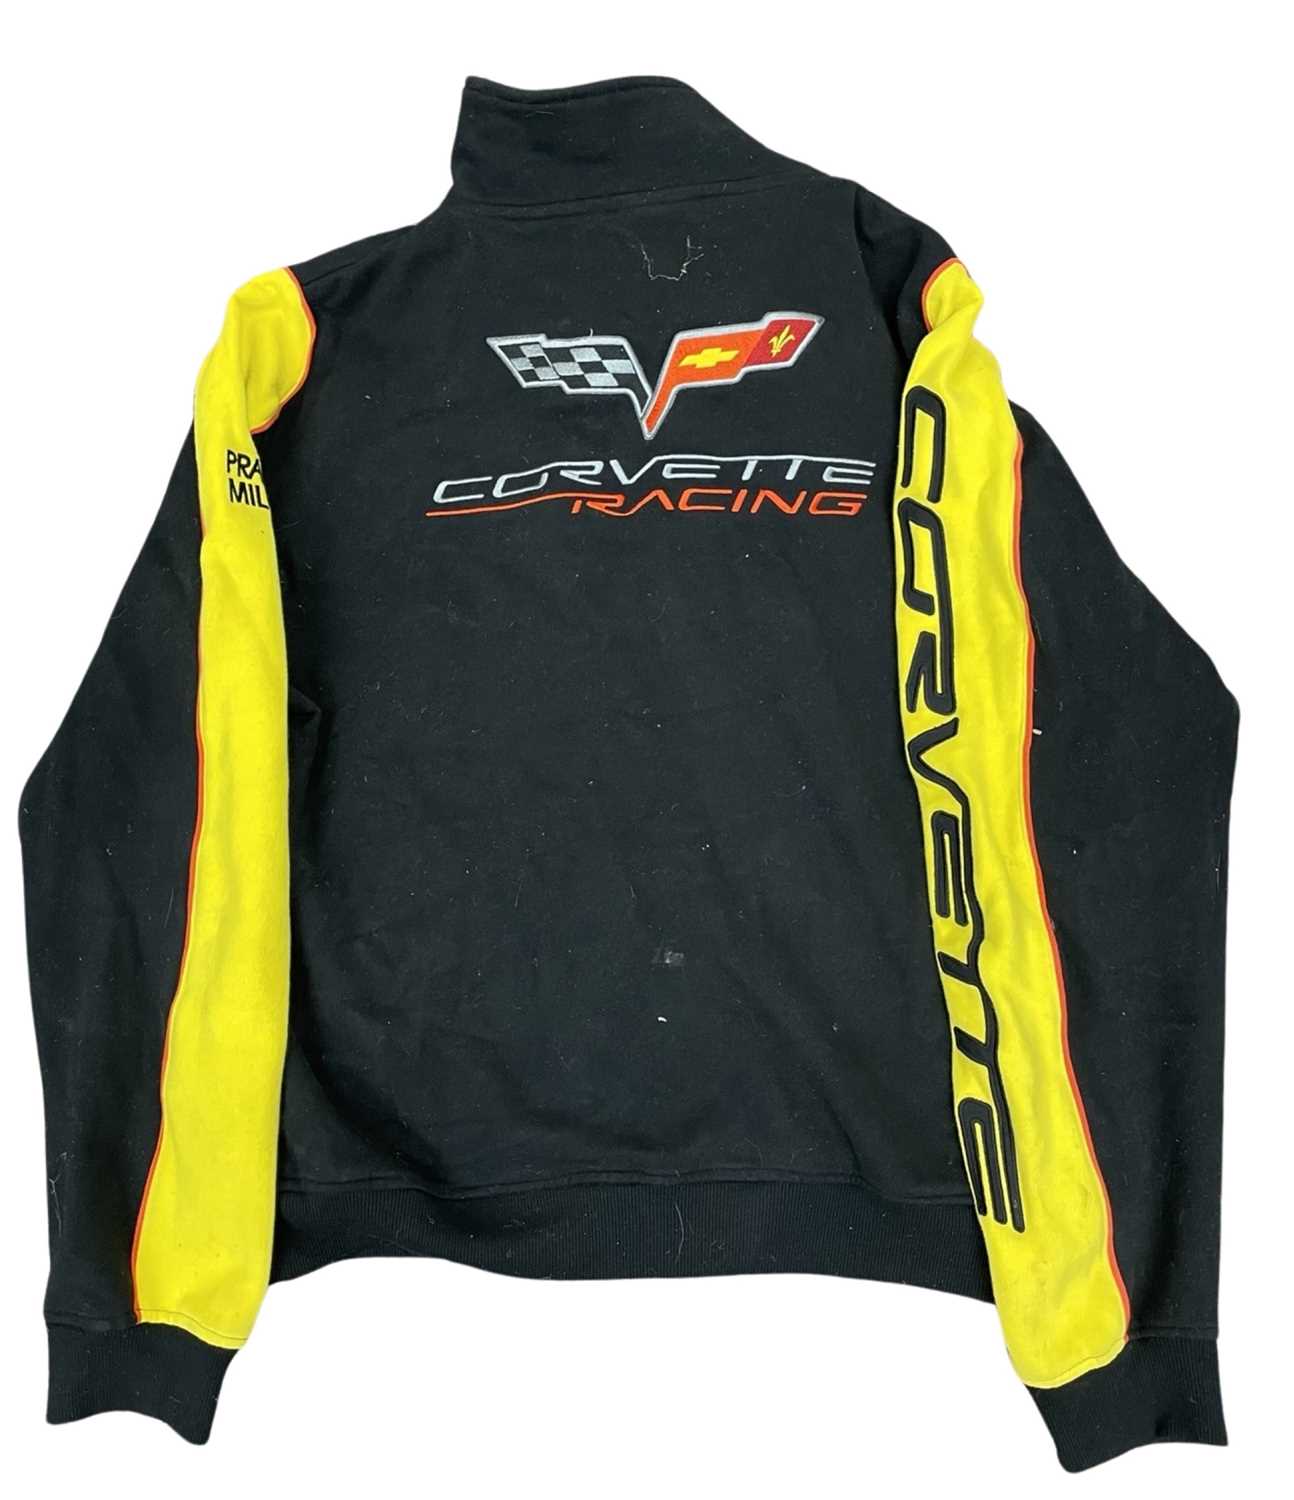 A Corvette Racing / Le Mans 2007 Fleece jacket, size L - Image 2 of 2